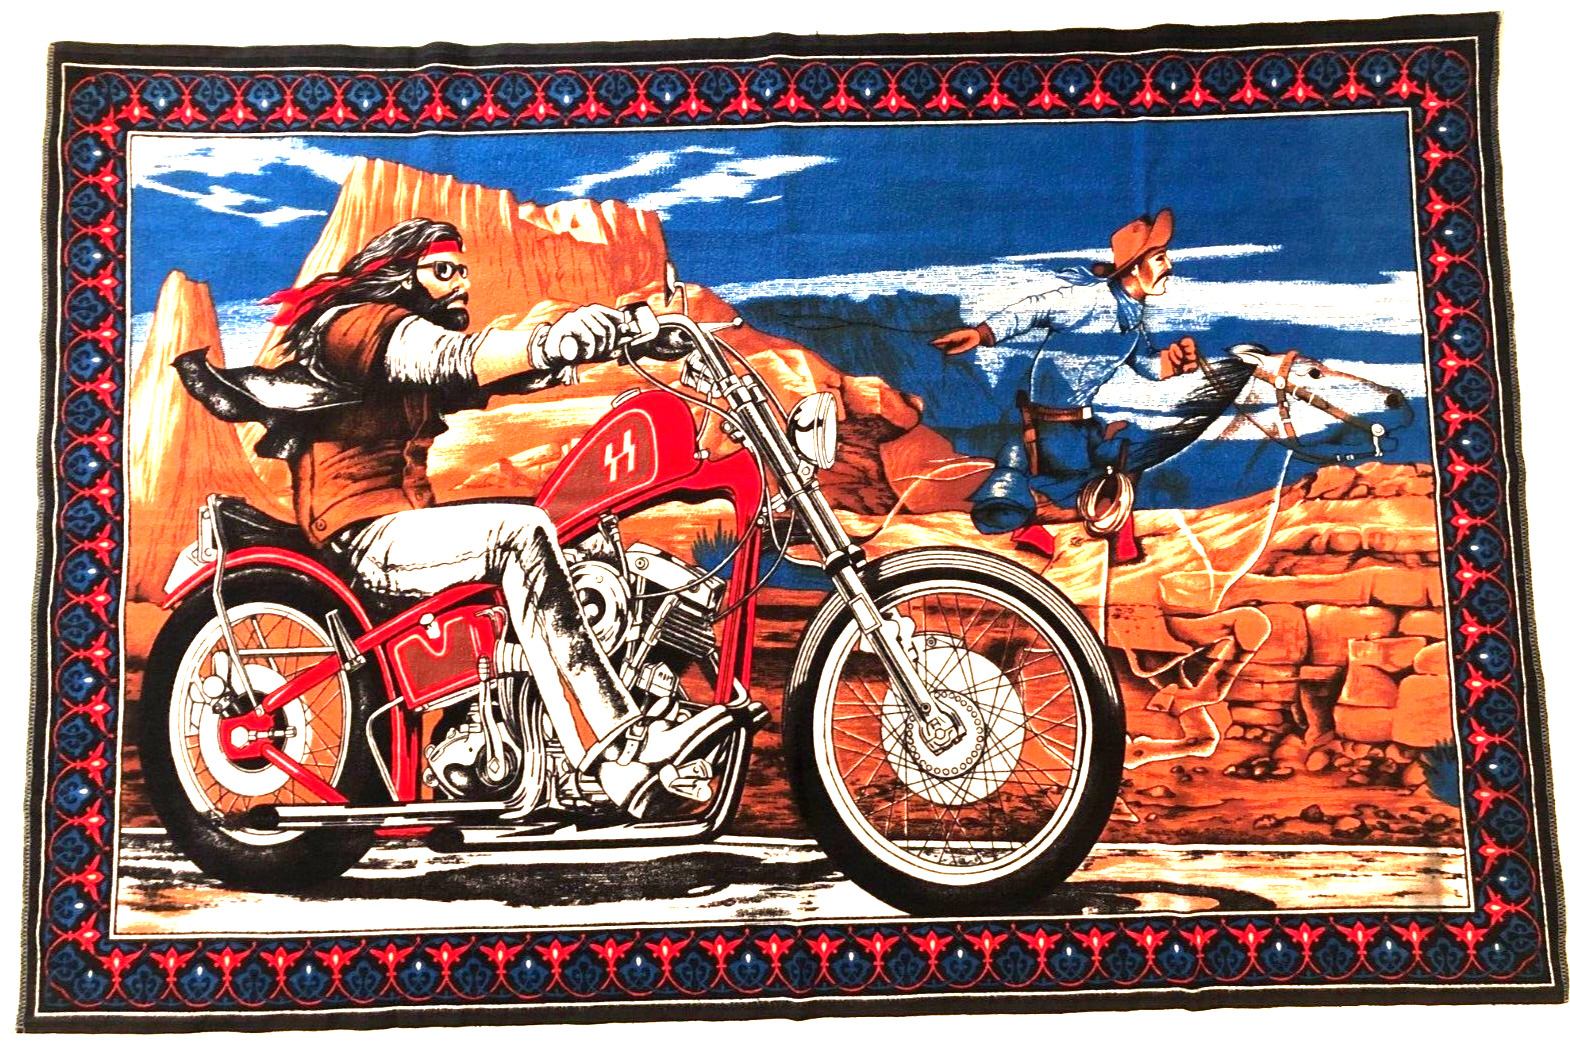 David Mann Easyriders Ghost Riders Motorcycle Tapestry American Harley Davidson